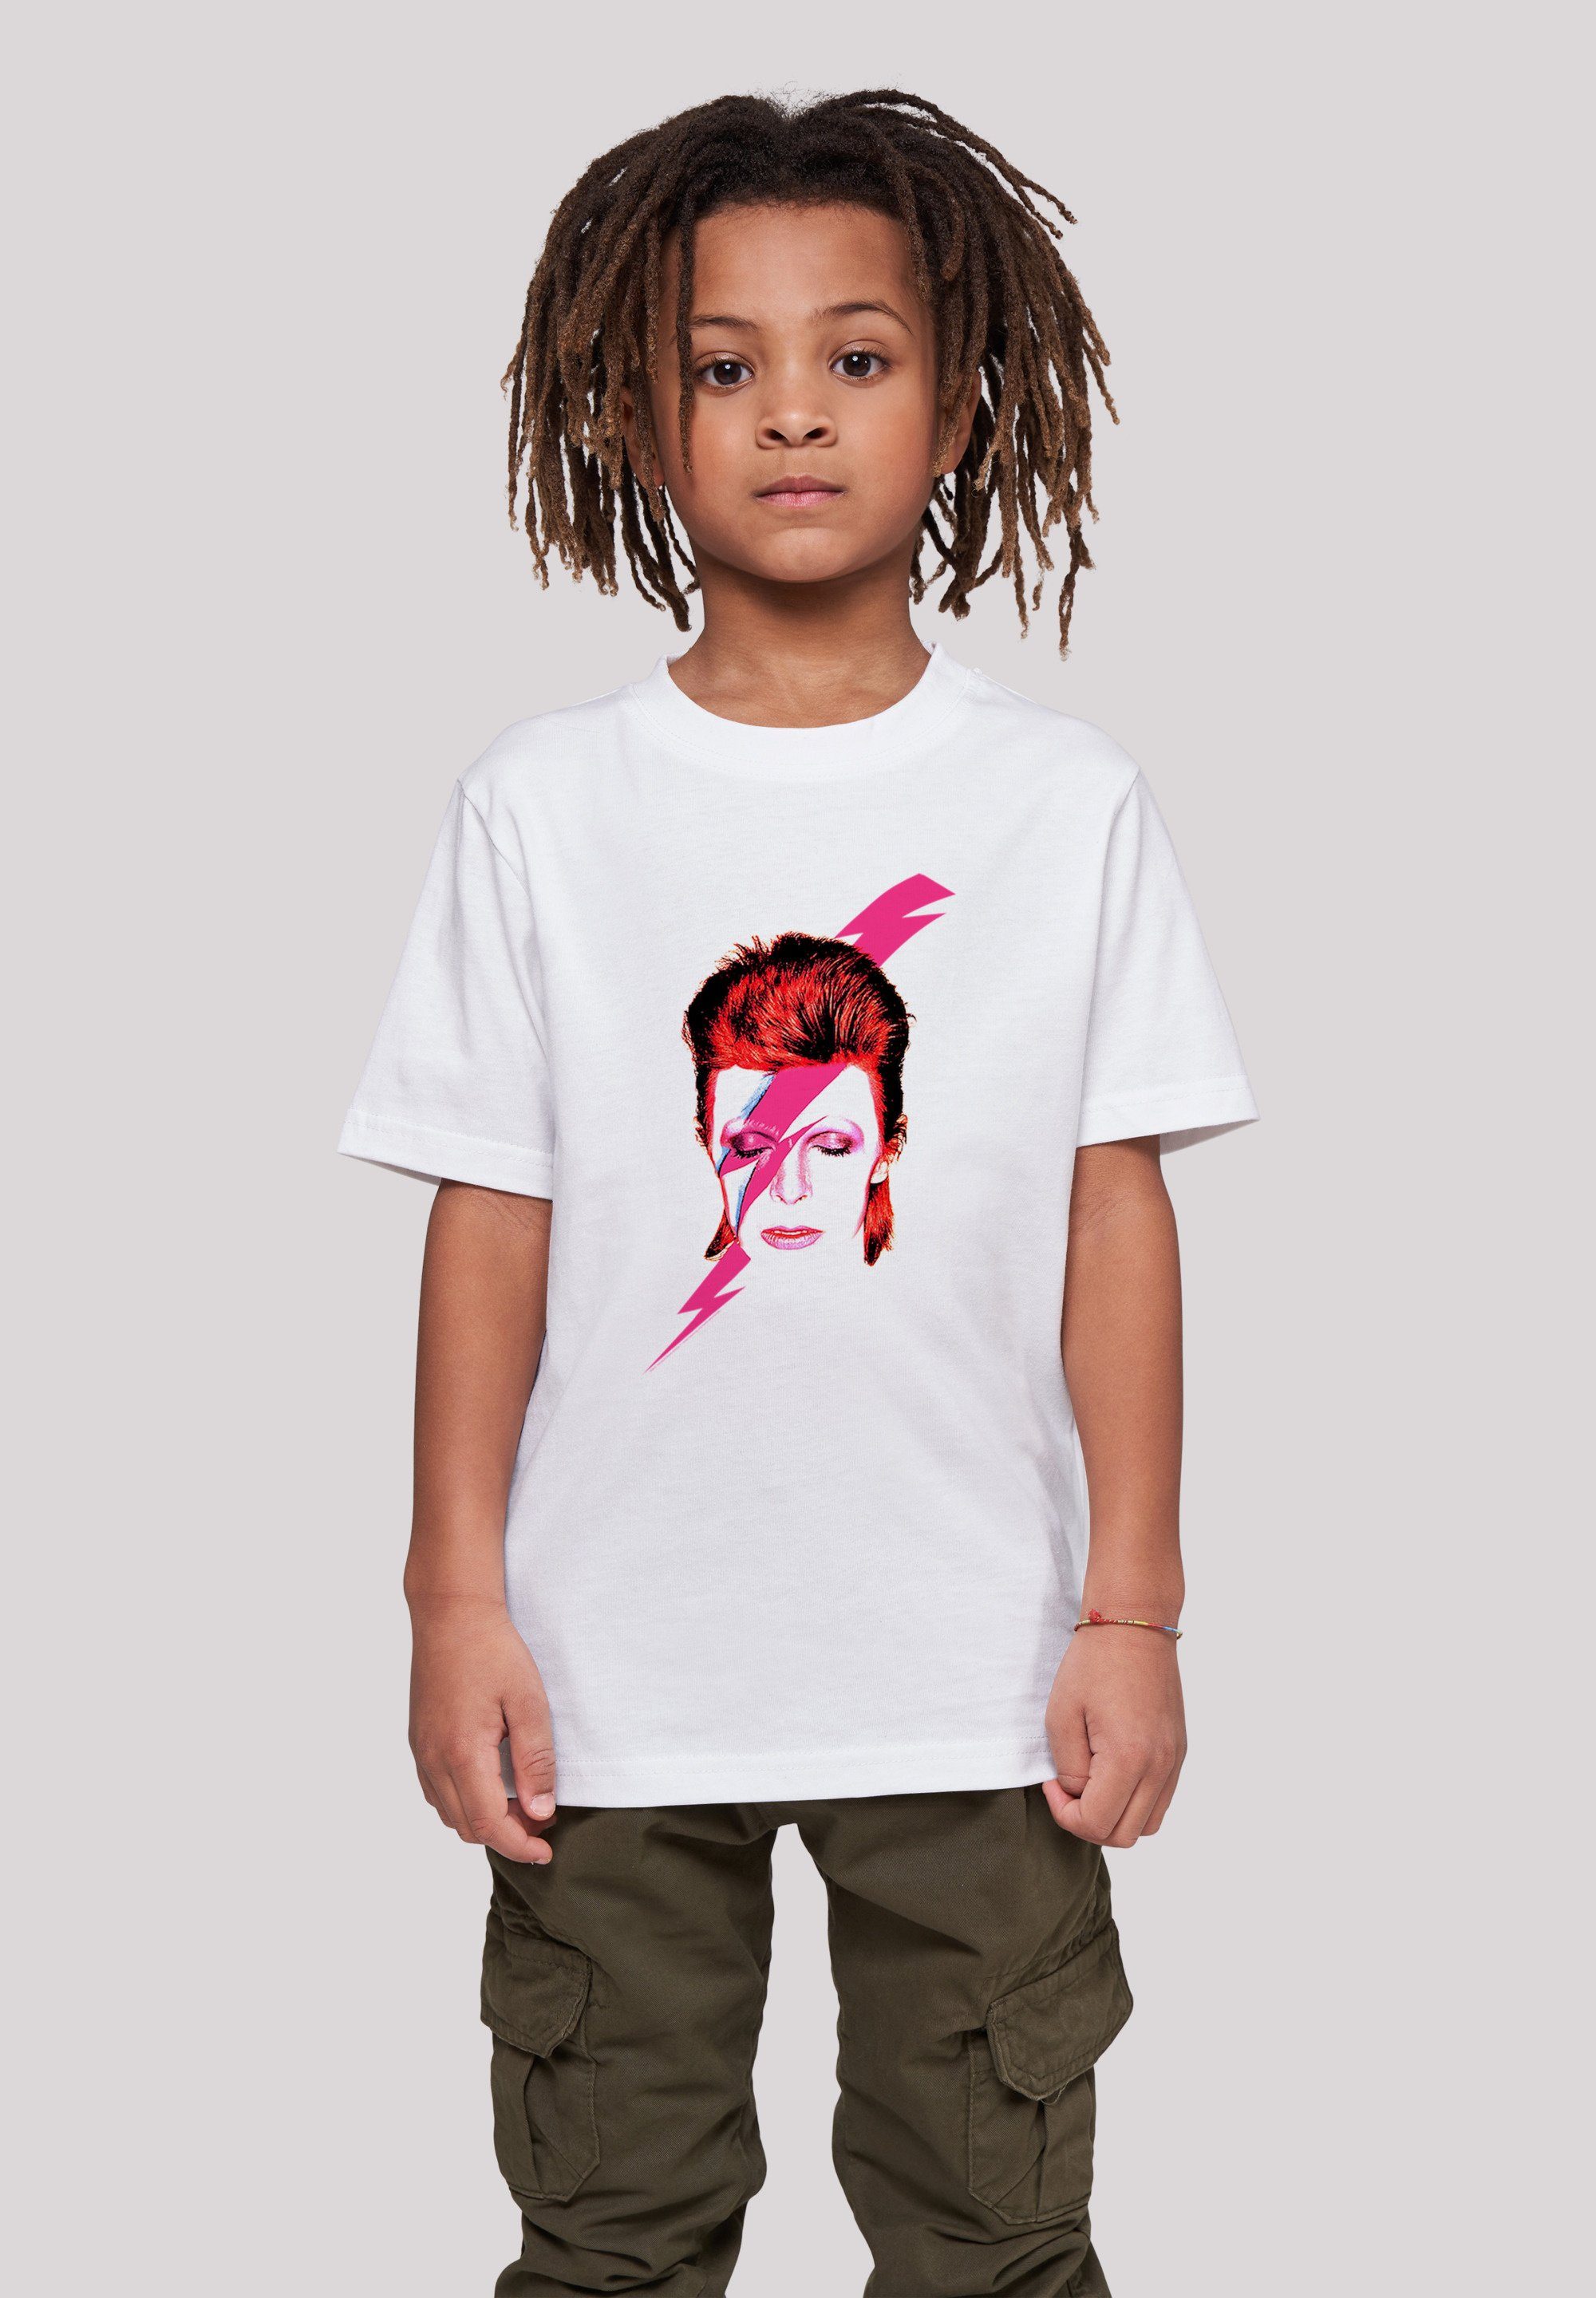 F4NT4STIC T-Shirt David Bowie Aladdin Sane Lightning Bolt Unisex Kinder,Premium  Merch,Jungen,Mädchen,Bandshirt, Unser Model ist 146cm groß und trägt Größe  146/152